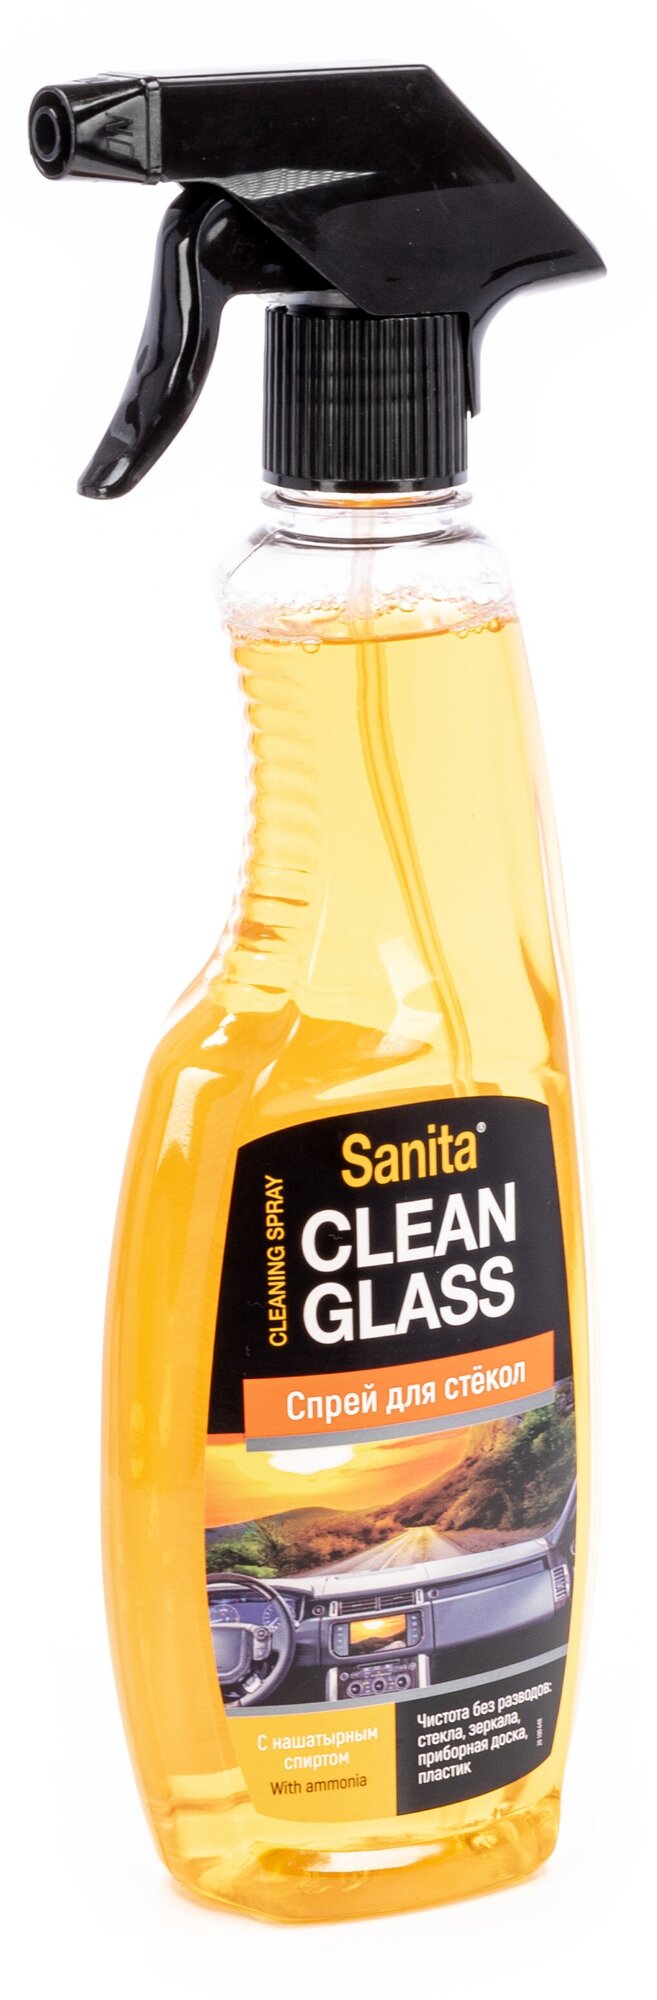 Clean Glass для стекол с нашатырным спиртом Sanita